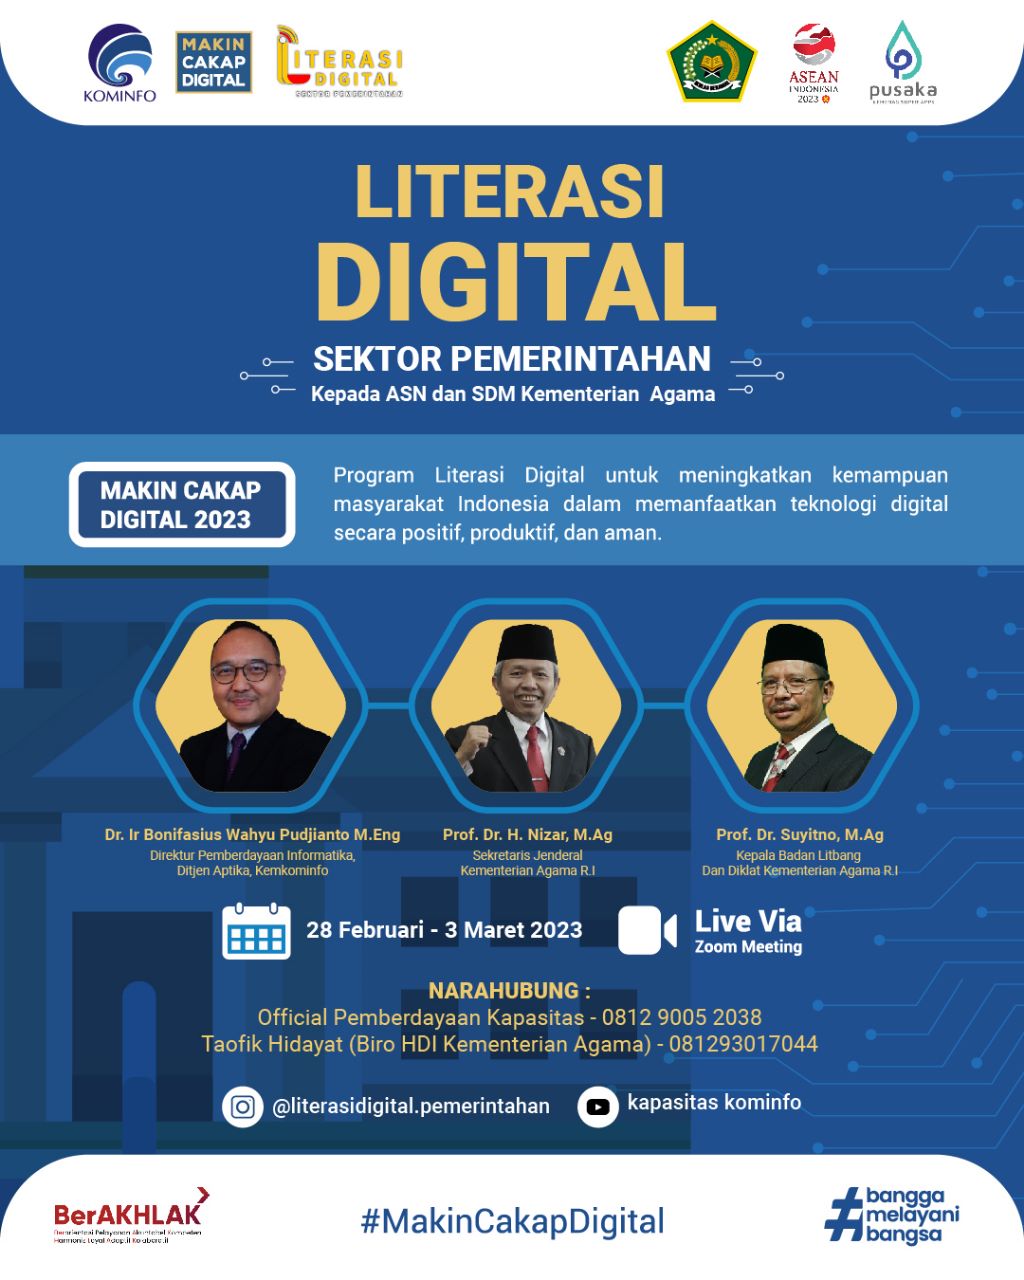 Literasi Digital Sektor Pemerintahan kepada ASN dan SDM Kementerian Agama